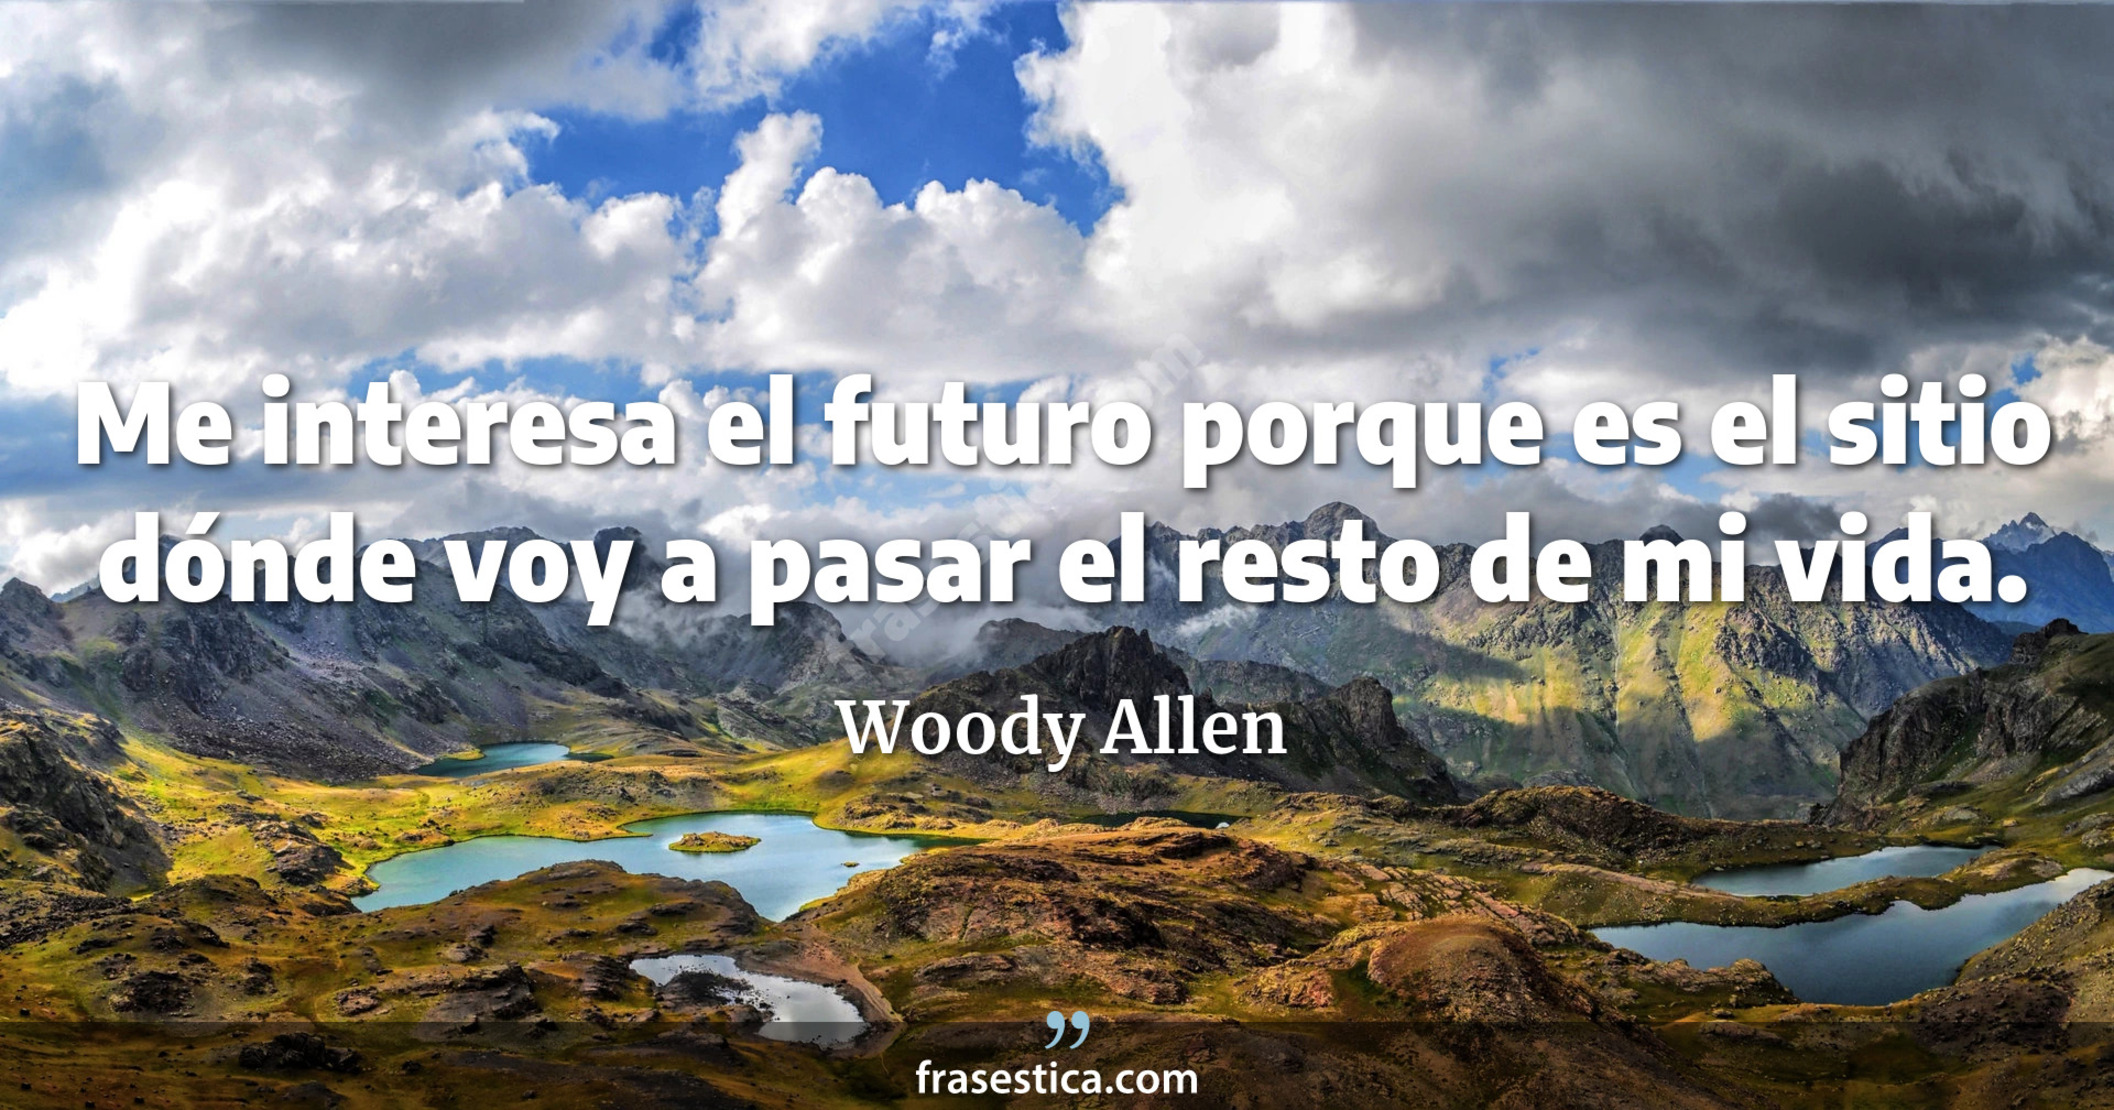 Me interesa el futuro porque es el sitio dónde voy a pasar el resto de mi vida. - Woody Allen